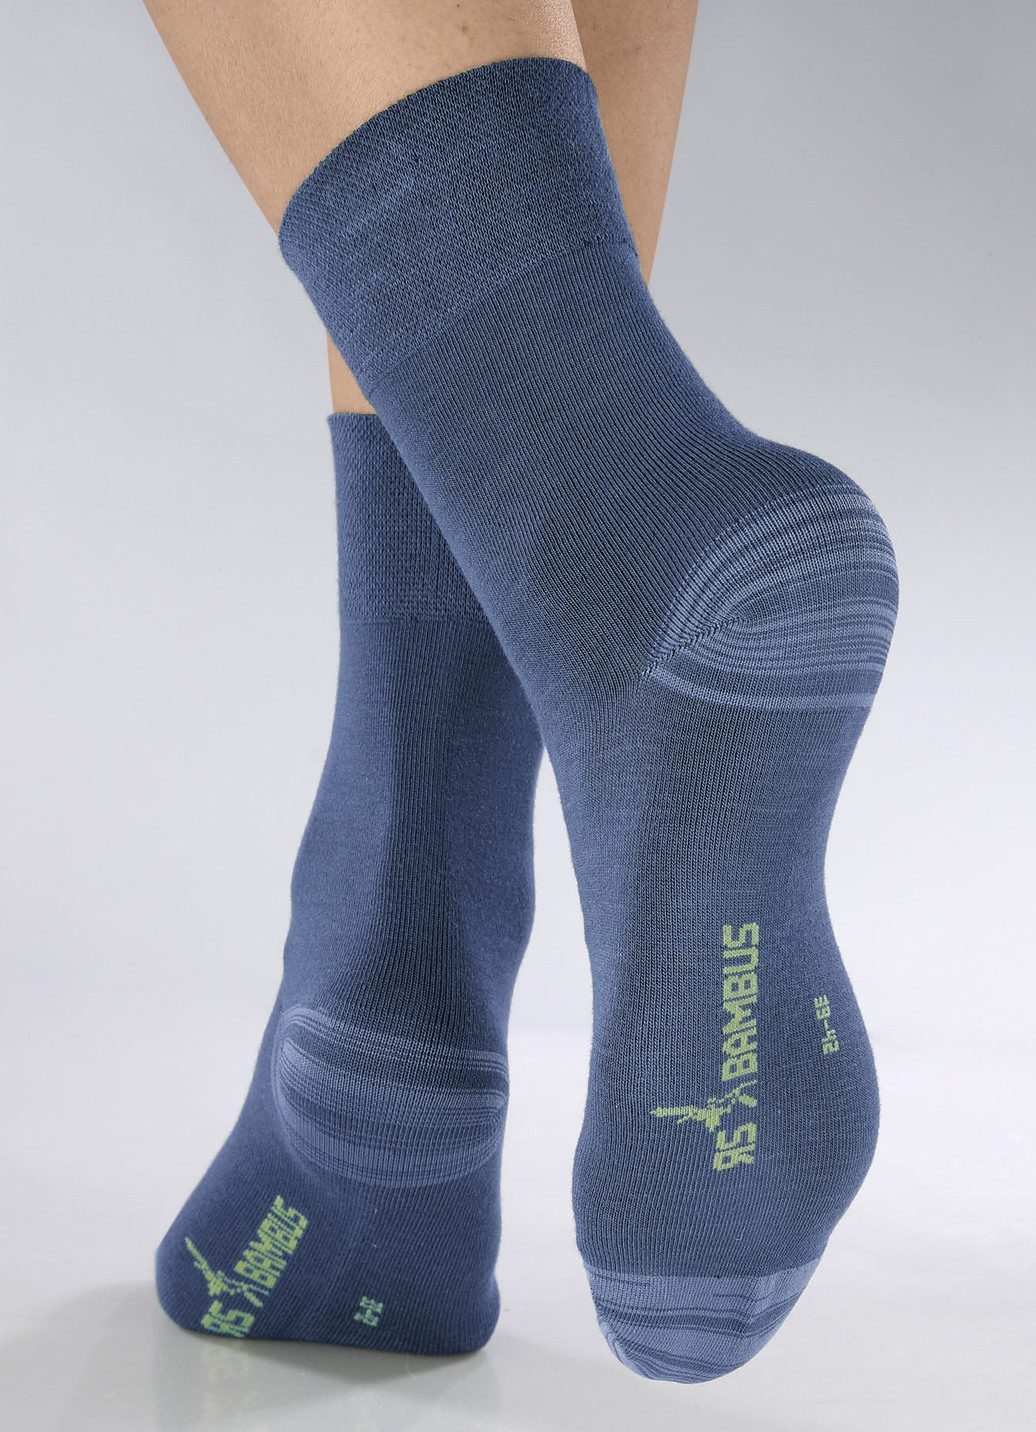 Sechserpack Socken in verschiedenen Farbstellungen, 2X Jeansblau Meliert, 2X Marine Meliert, 2X Nachtblau Meliert, Größe 1 (Schuhgr. 35-38) von BADER